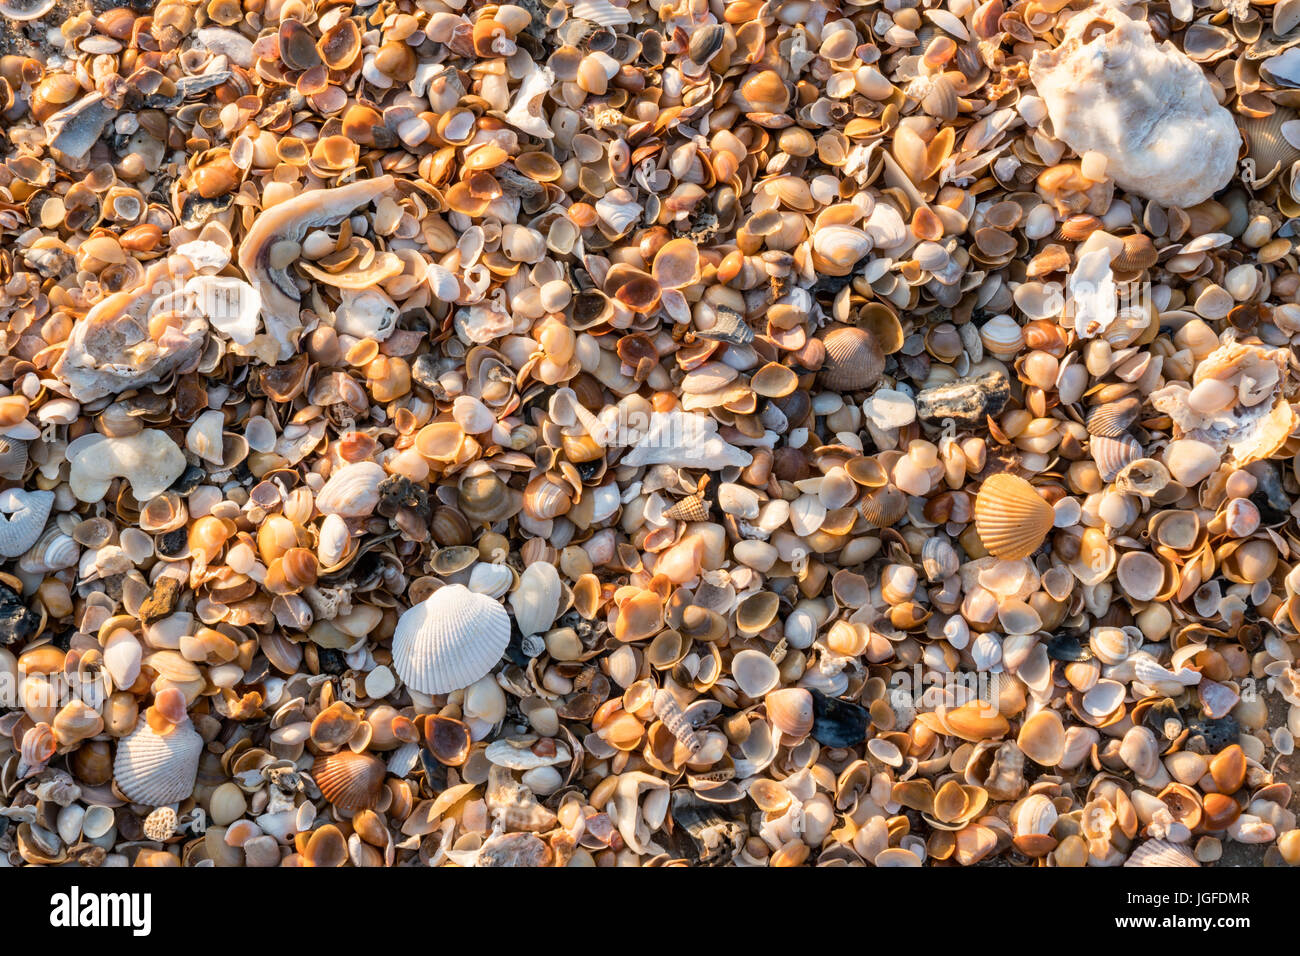 Une collection de coquillages trouvés sur les plages d'Amelia Island, en Floride. Banque D'Images